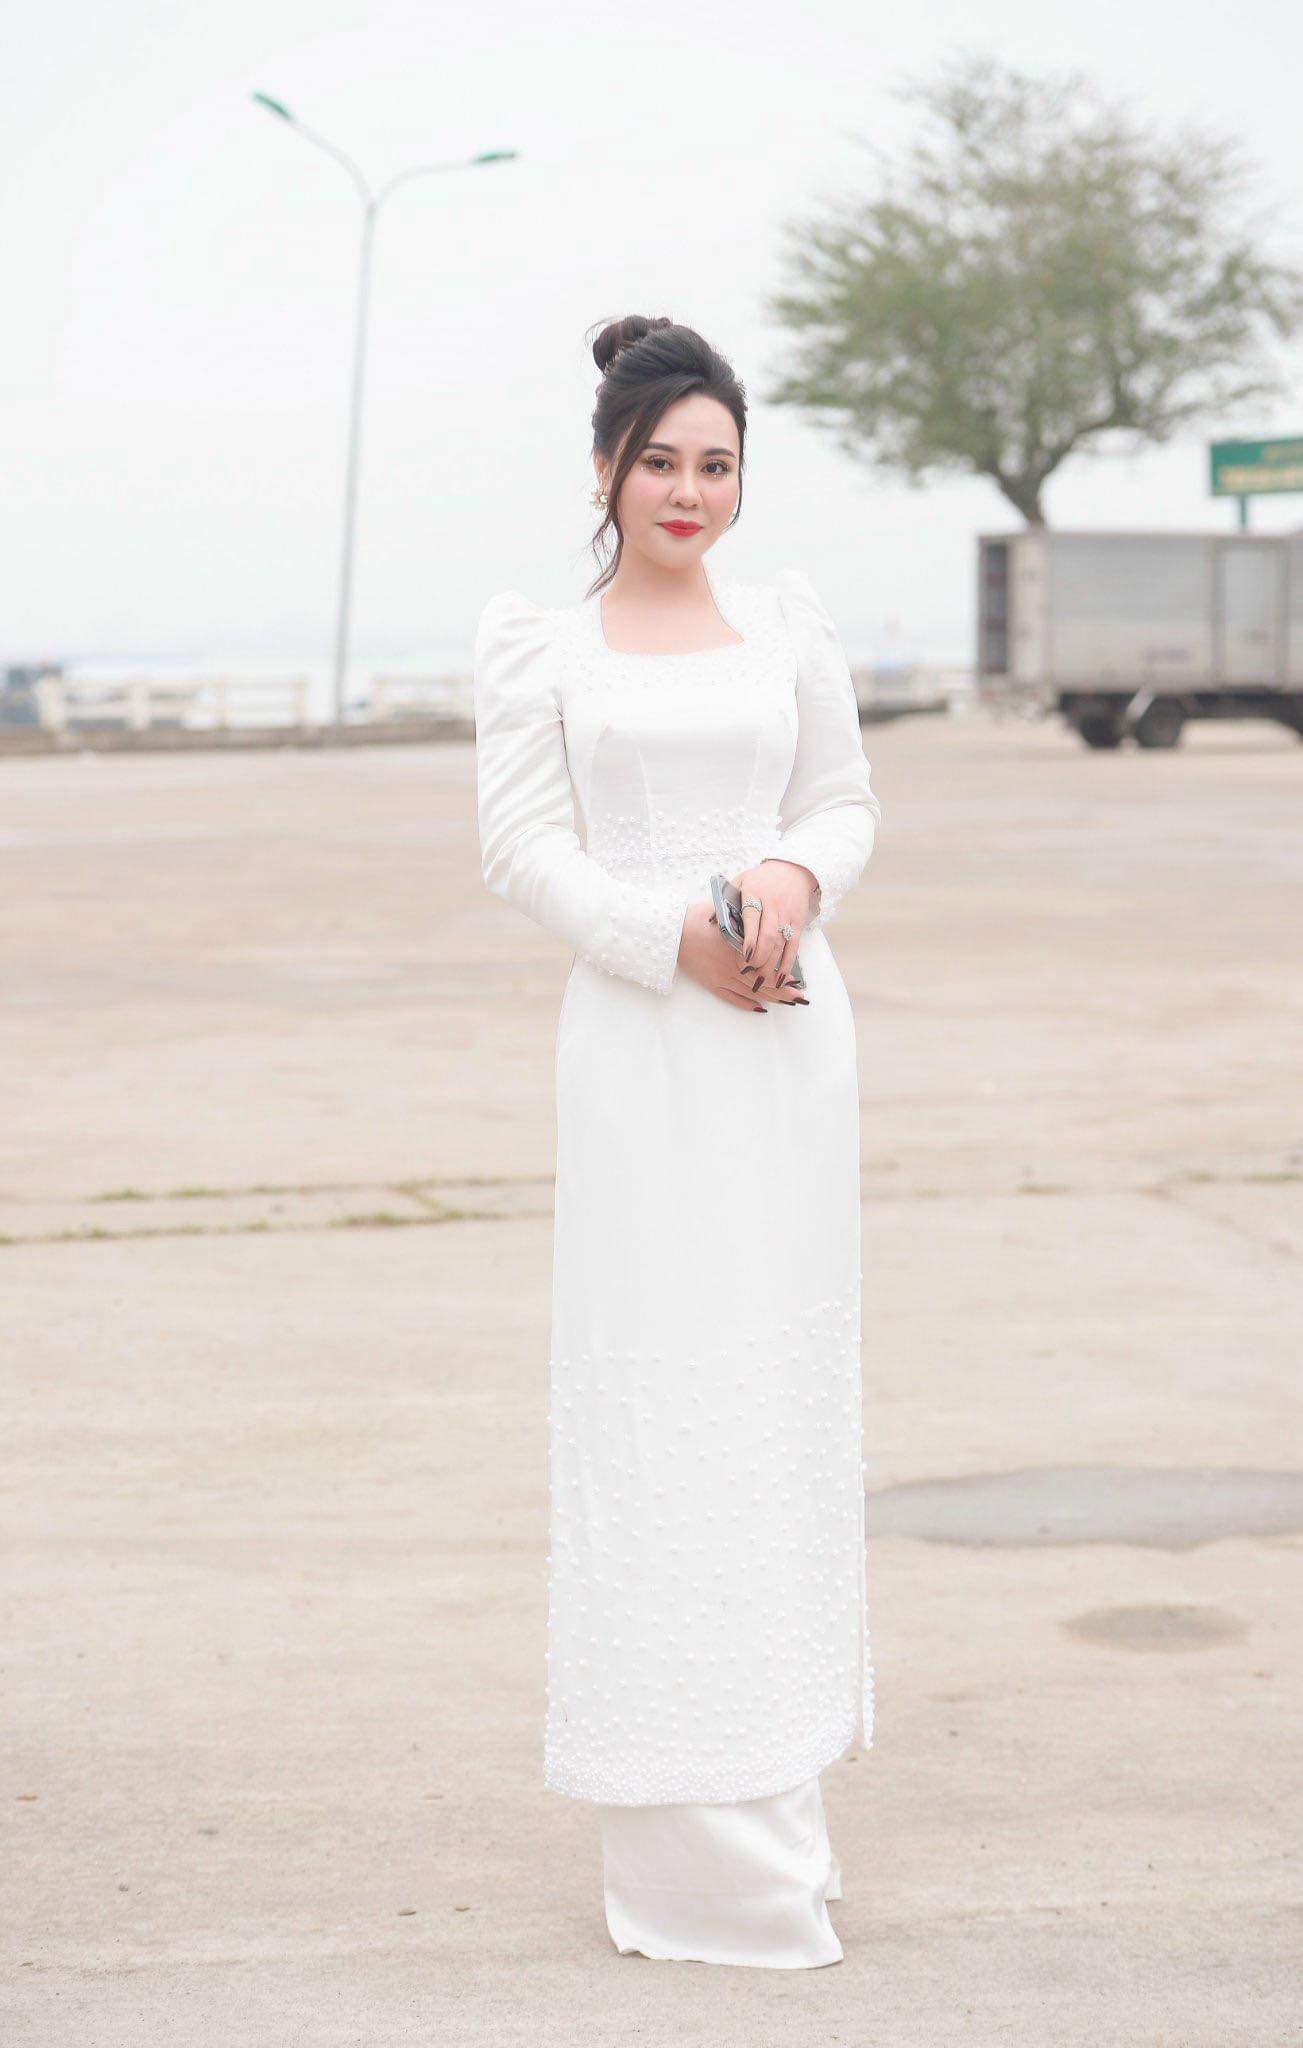 Hoa hậu Phan Kim Oanh dùng hết tiền cát xê để từ thiện